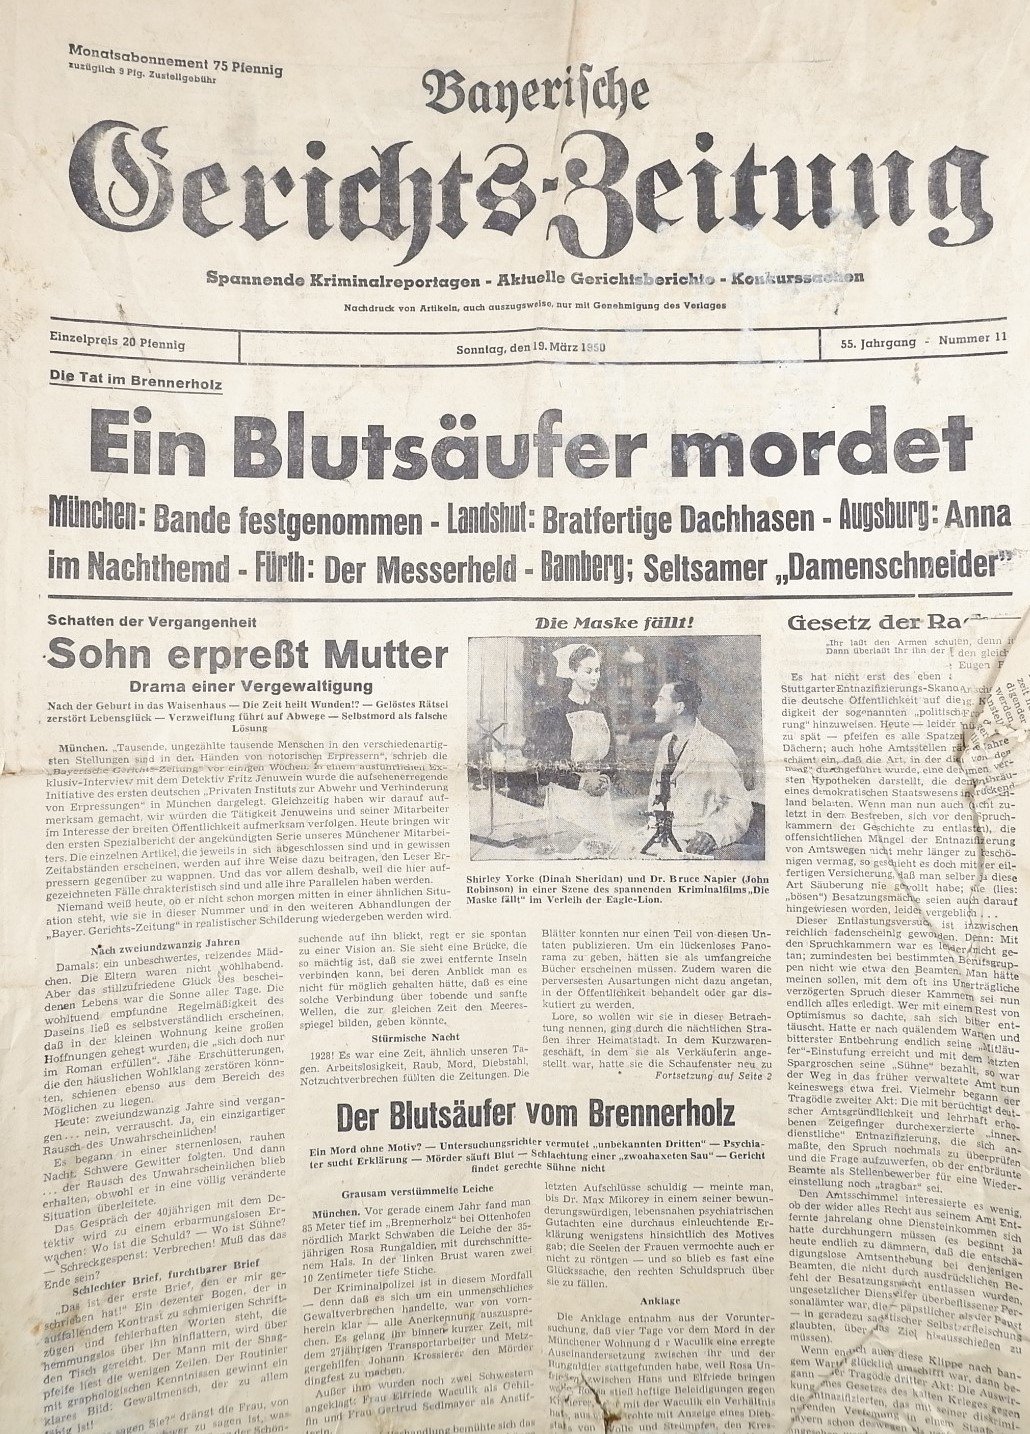 Banerische Gerichtszeitung 19. März 1950 (Volkskunde- und Freilichtmuseum Roscheider Hof RR-F)